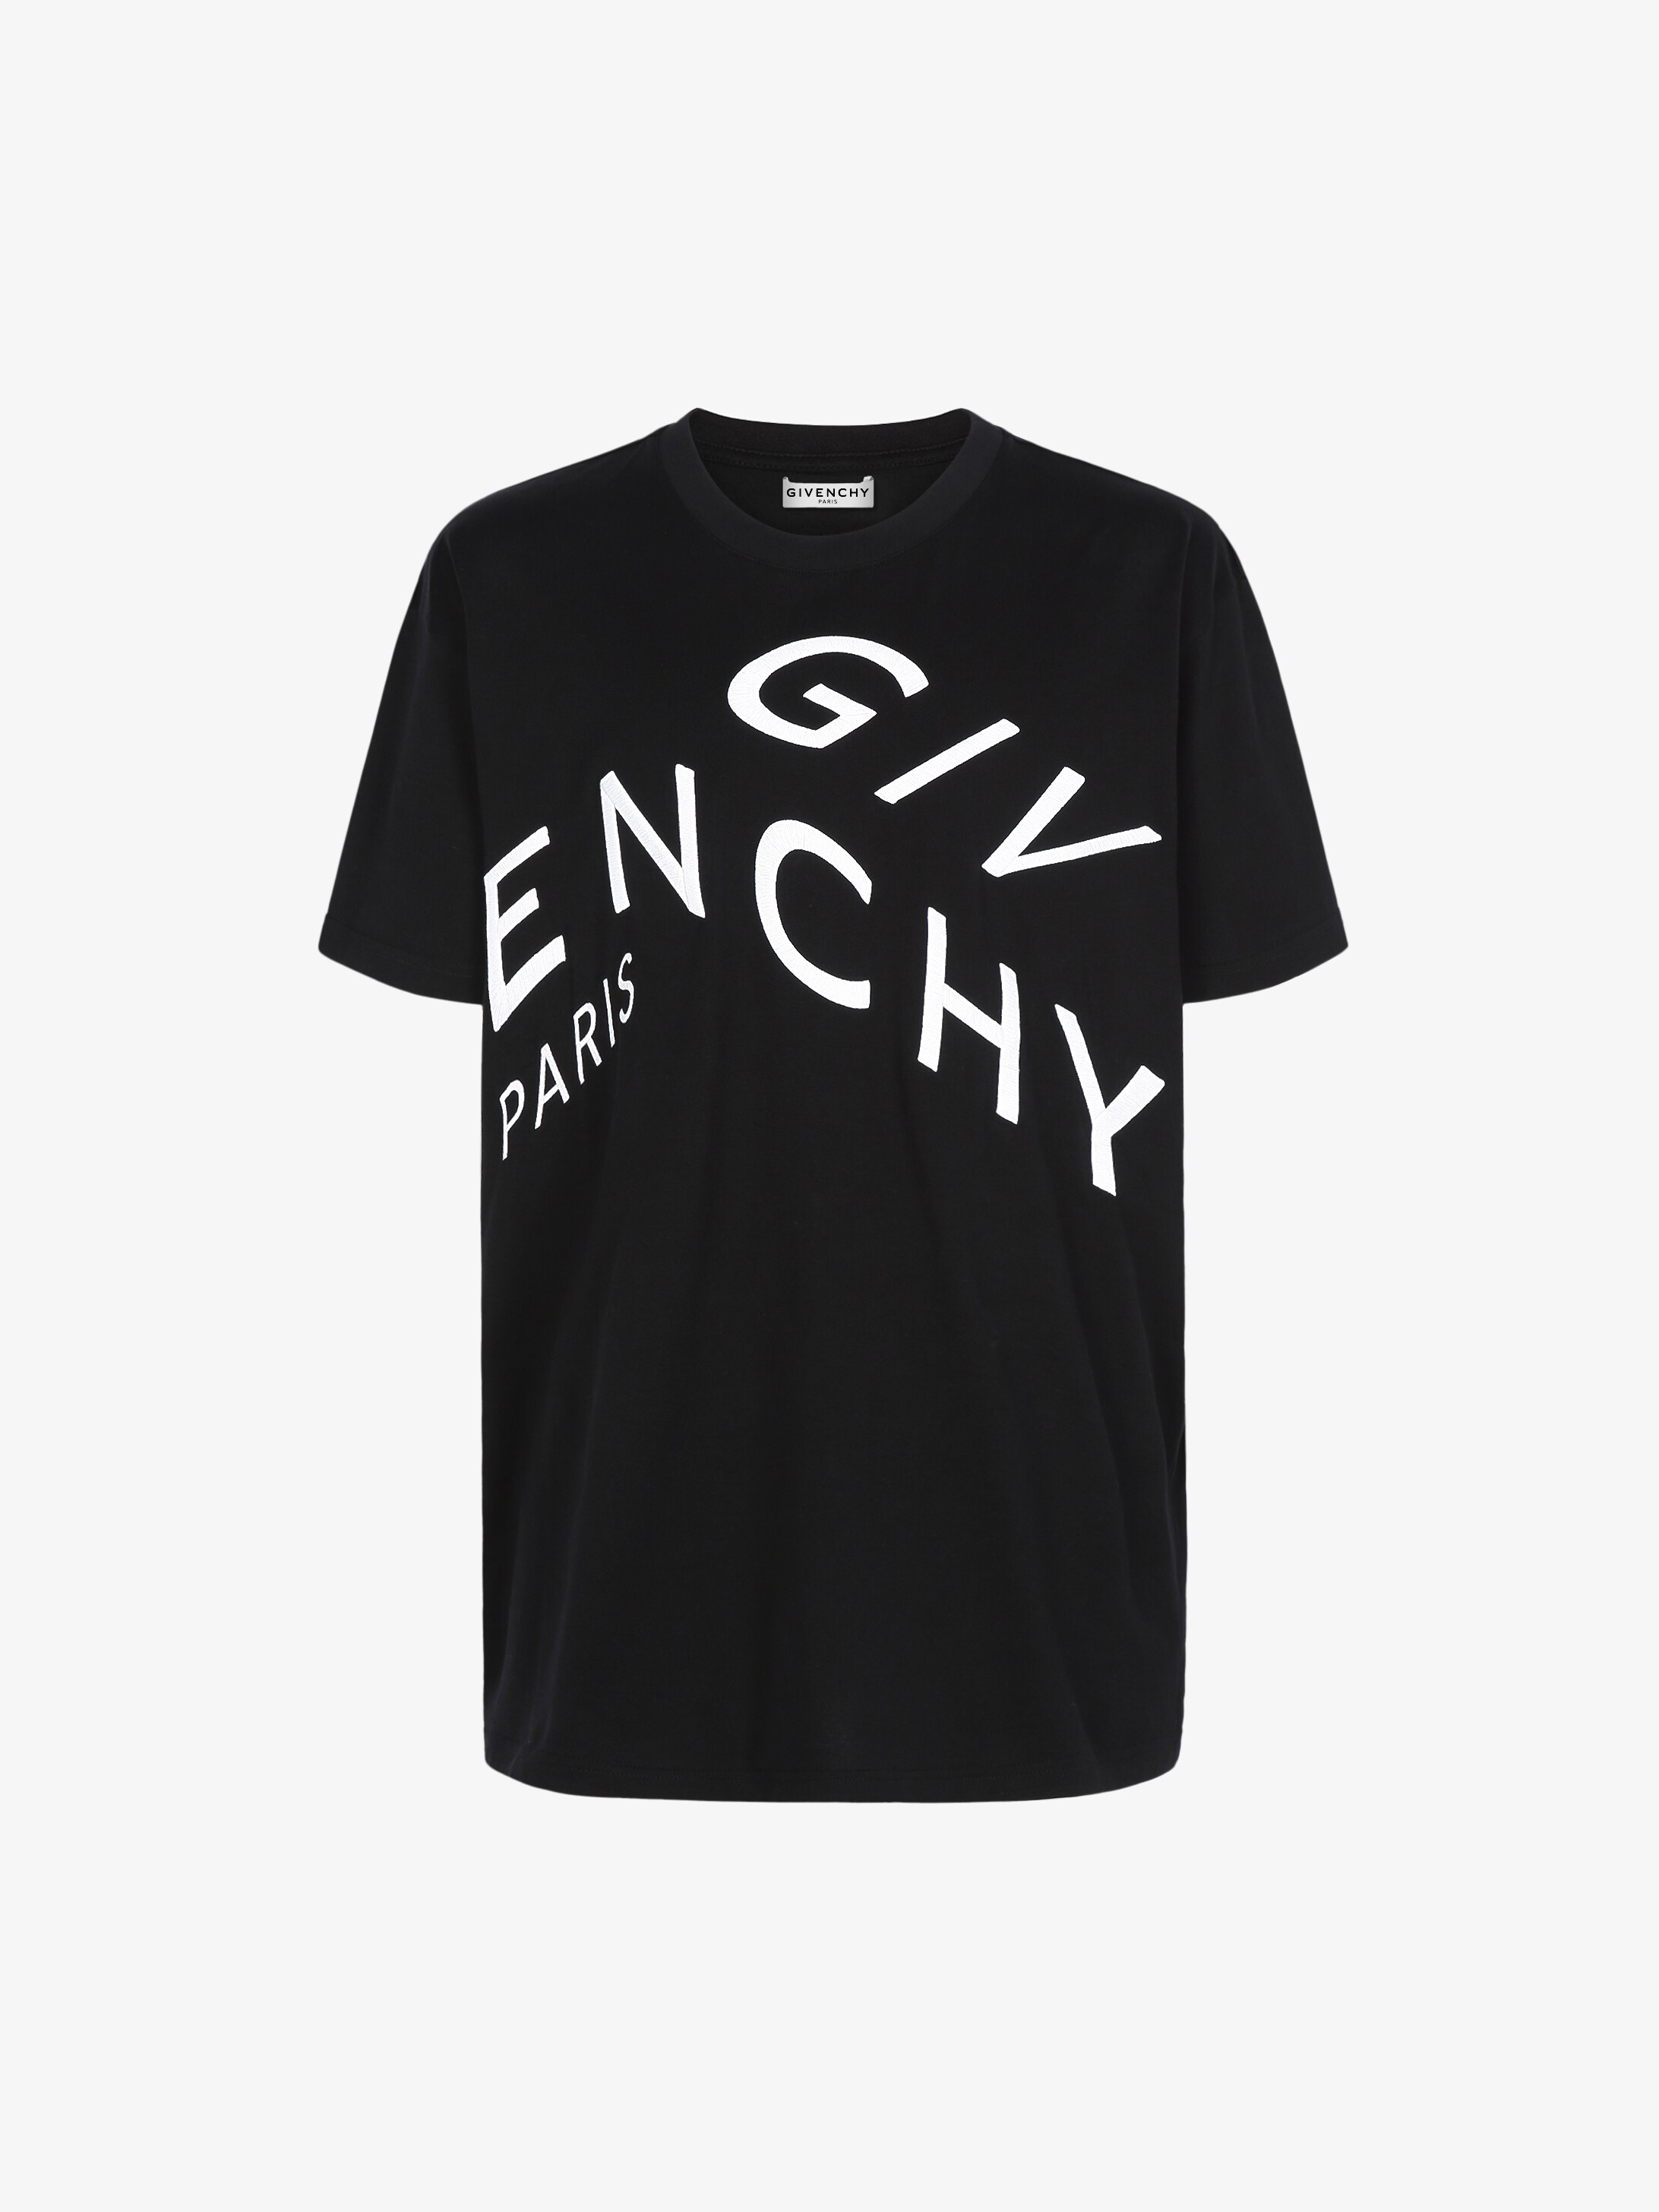 buy givenchy t shirt